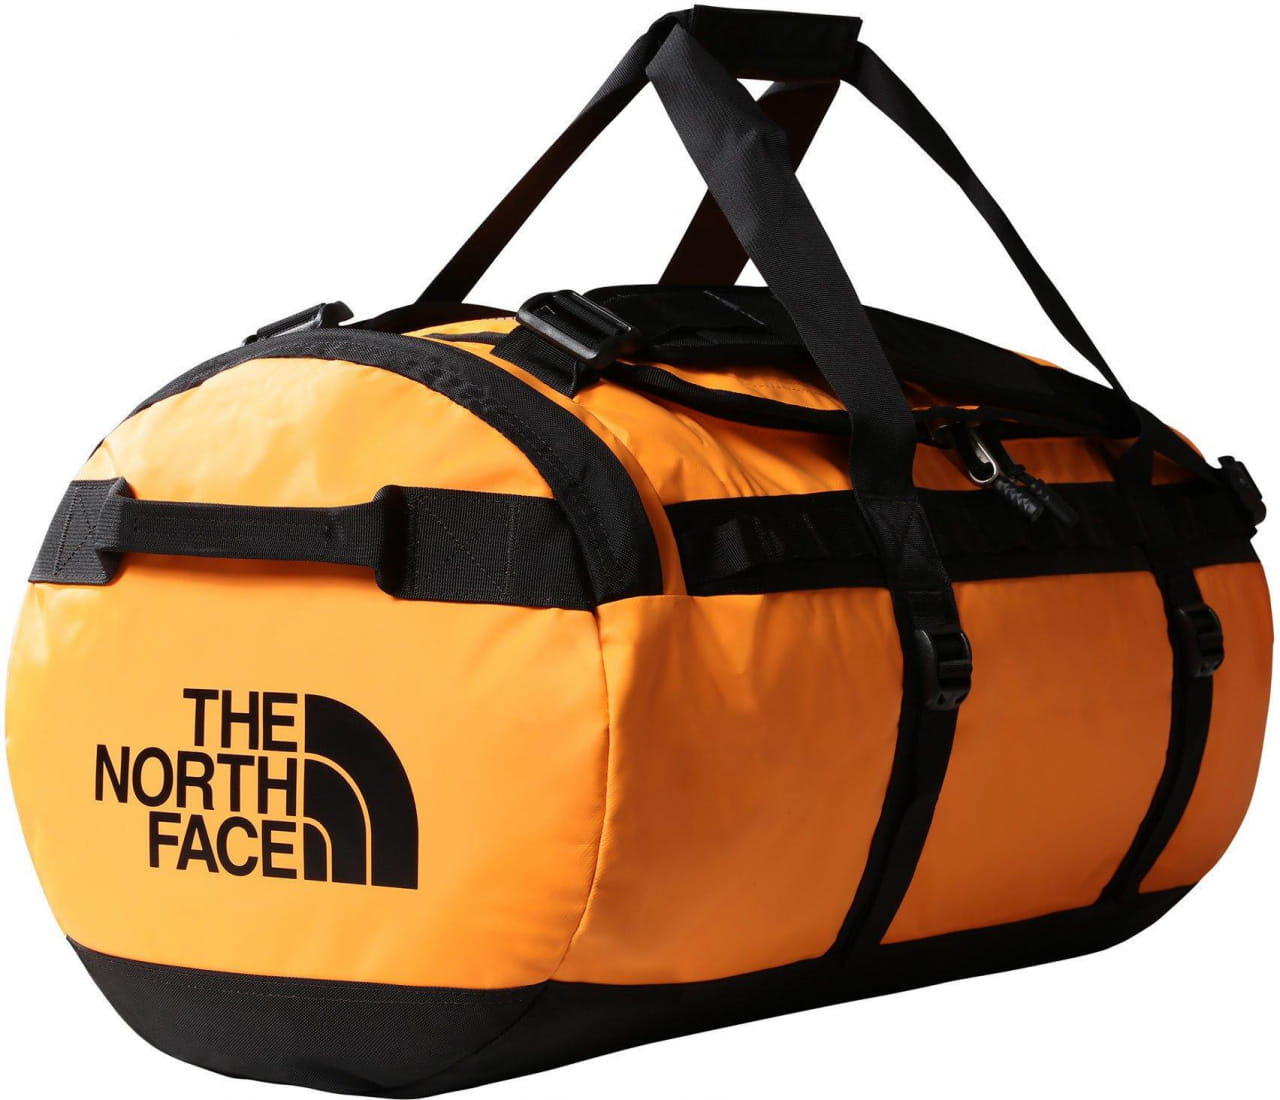 Cestovná taška The North Face Base Camp Duffel - M